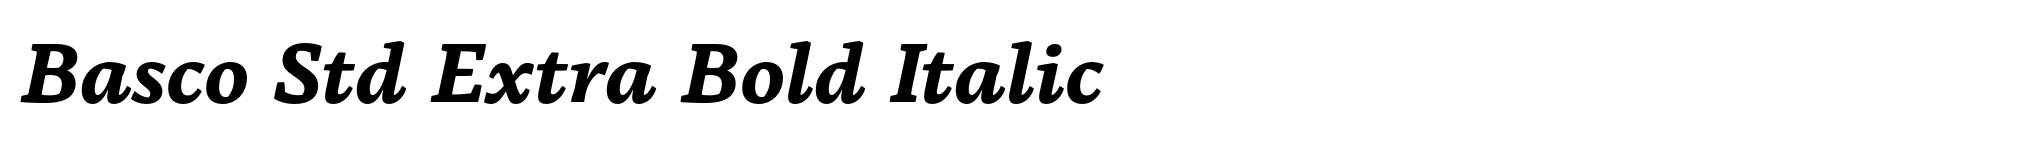 Basco Std Extra Bold Italic image